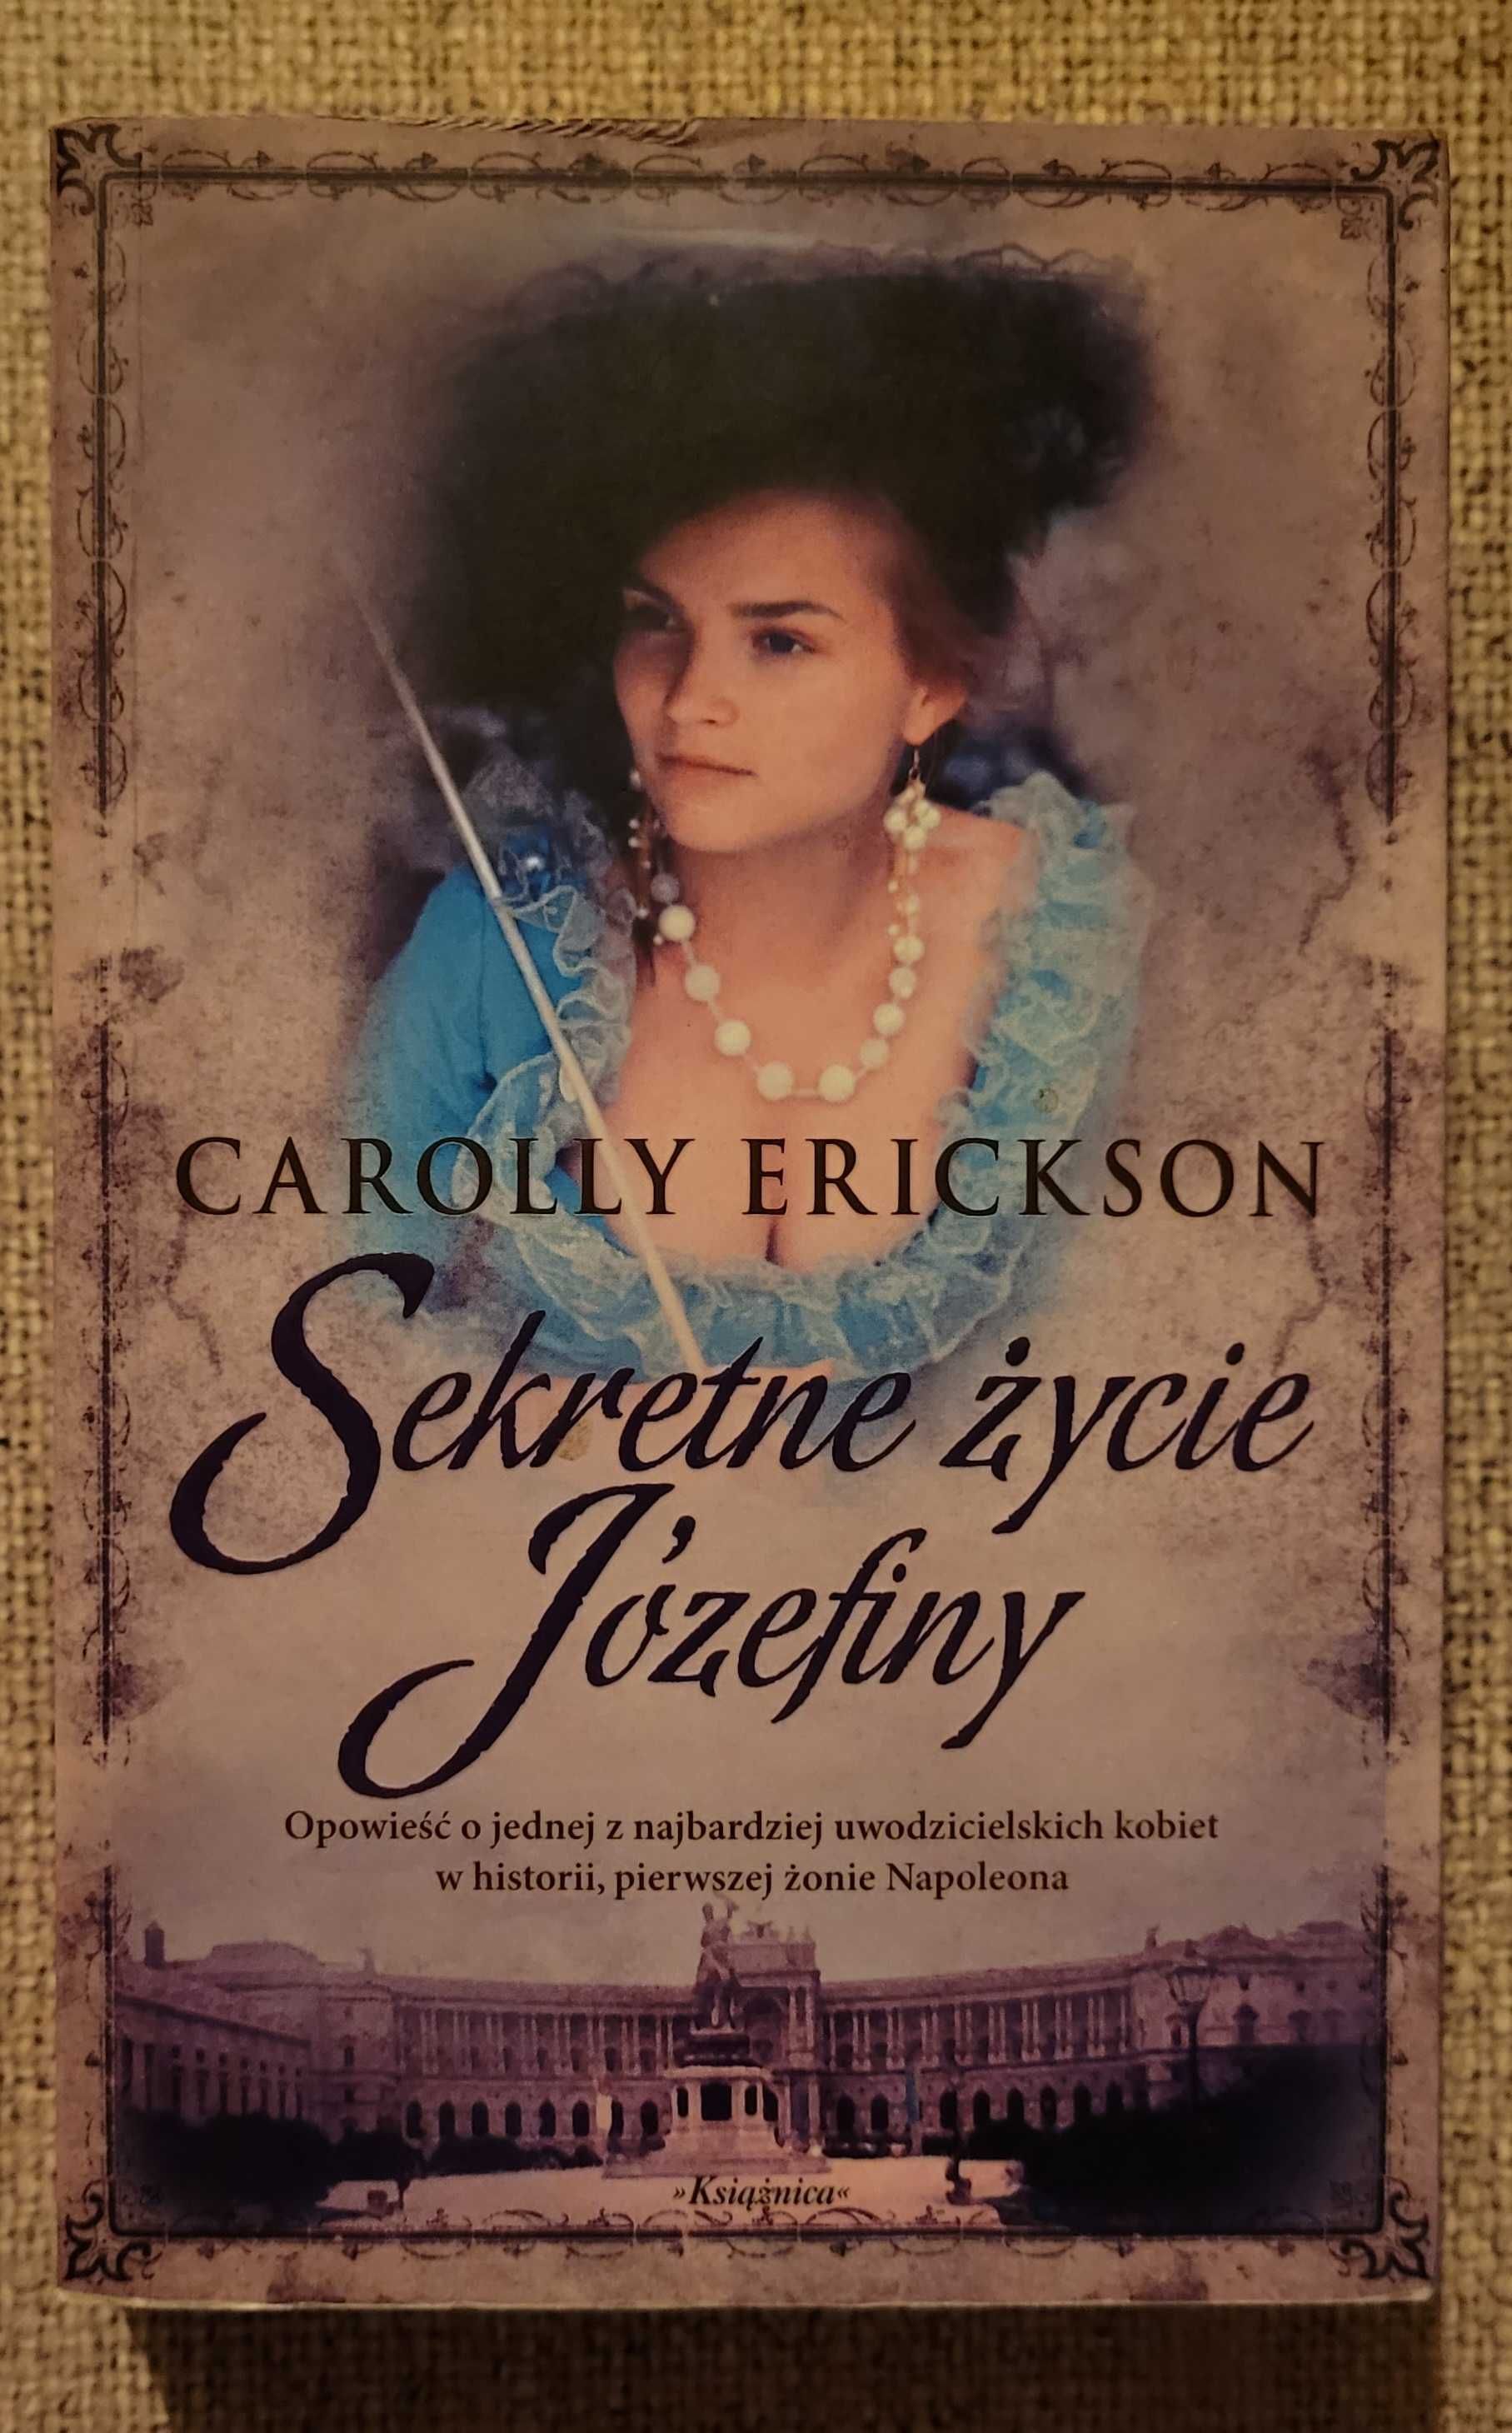 Romans historyczny "SEKRETNE ZYCIE JOZEFINY" autorki Carolly Erickson.